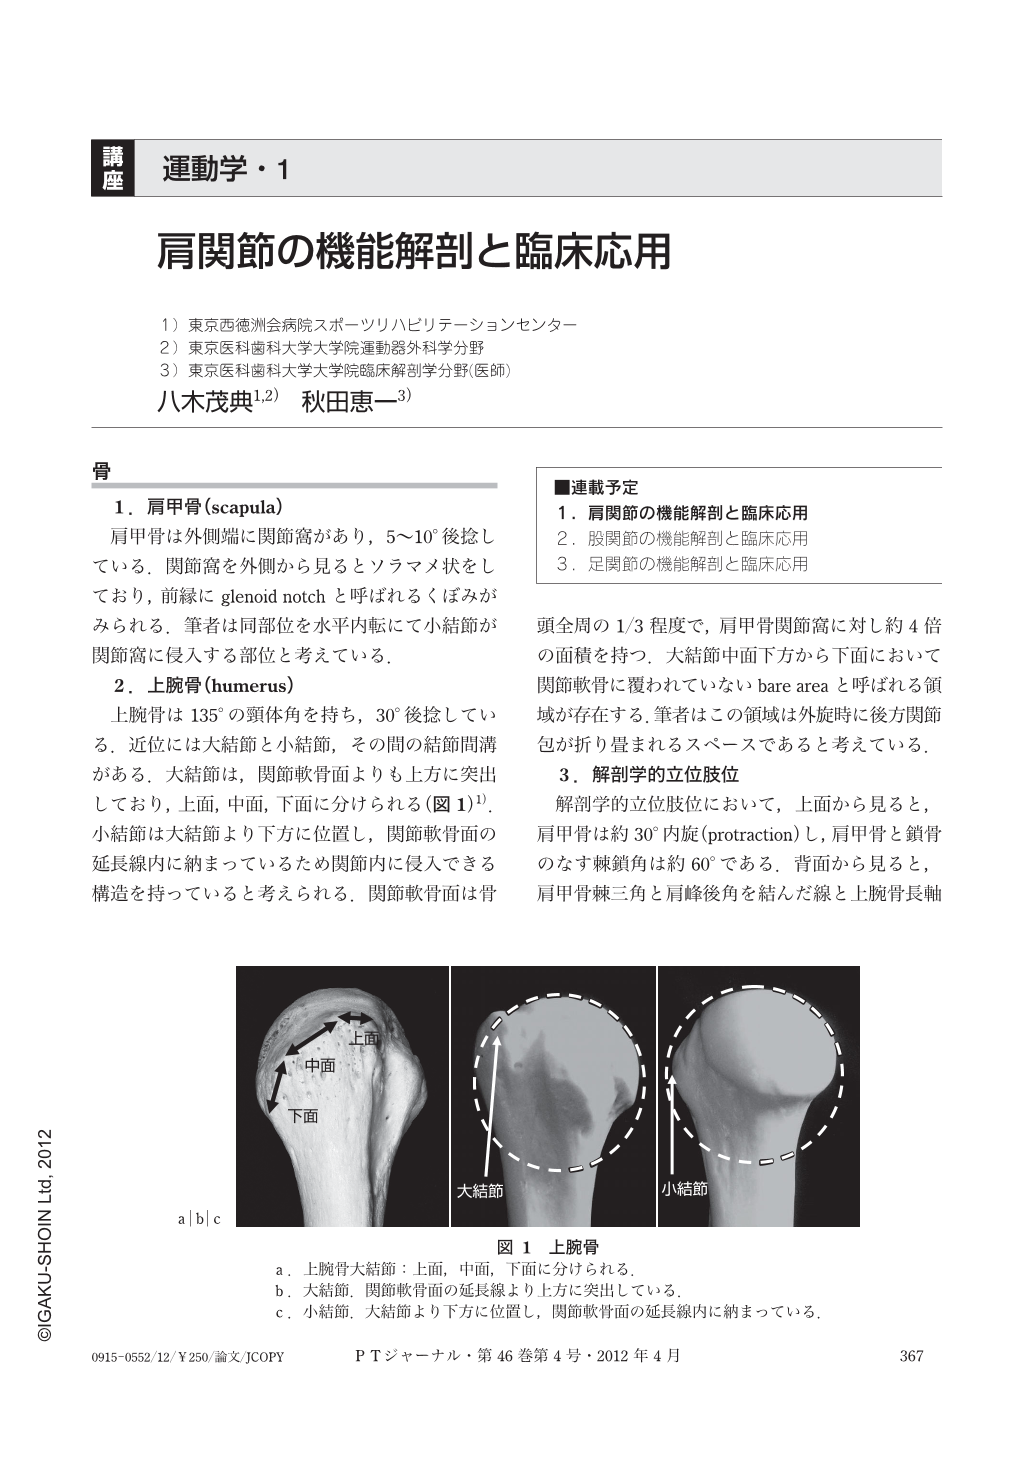 肩関節の機能解剖と臨床応用 (理学療法ジャーナル 46巻4号) | 医書.jp